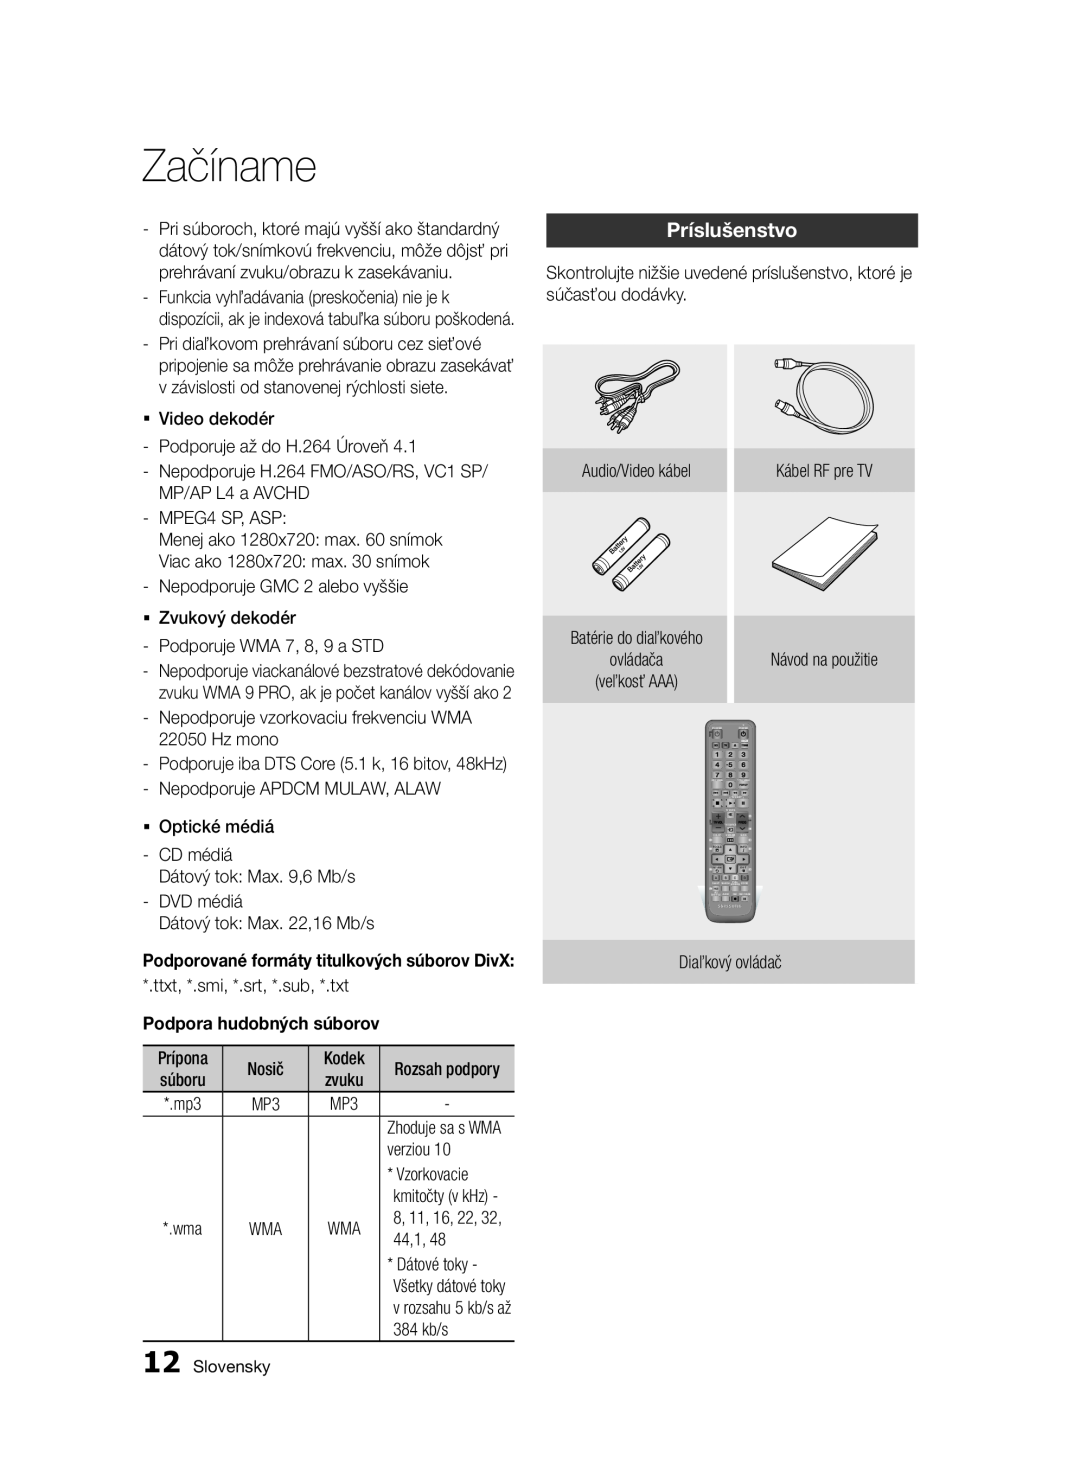 Samsung BD-E6300/EN manual Príslušenstvo, Podporované formáty titulkových súborov DivX, Začíname 